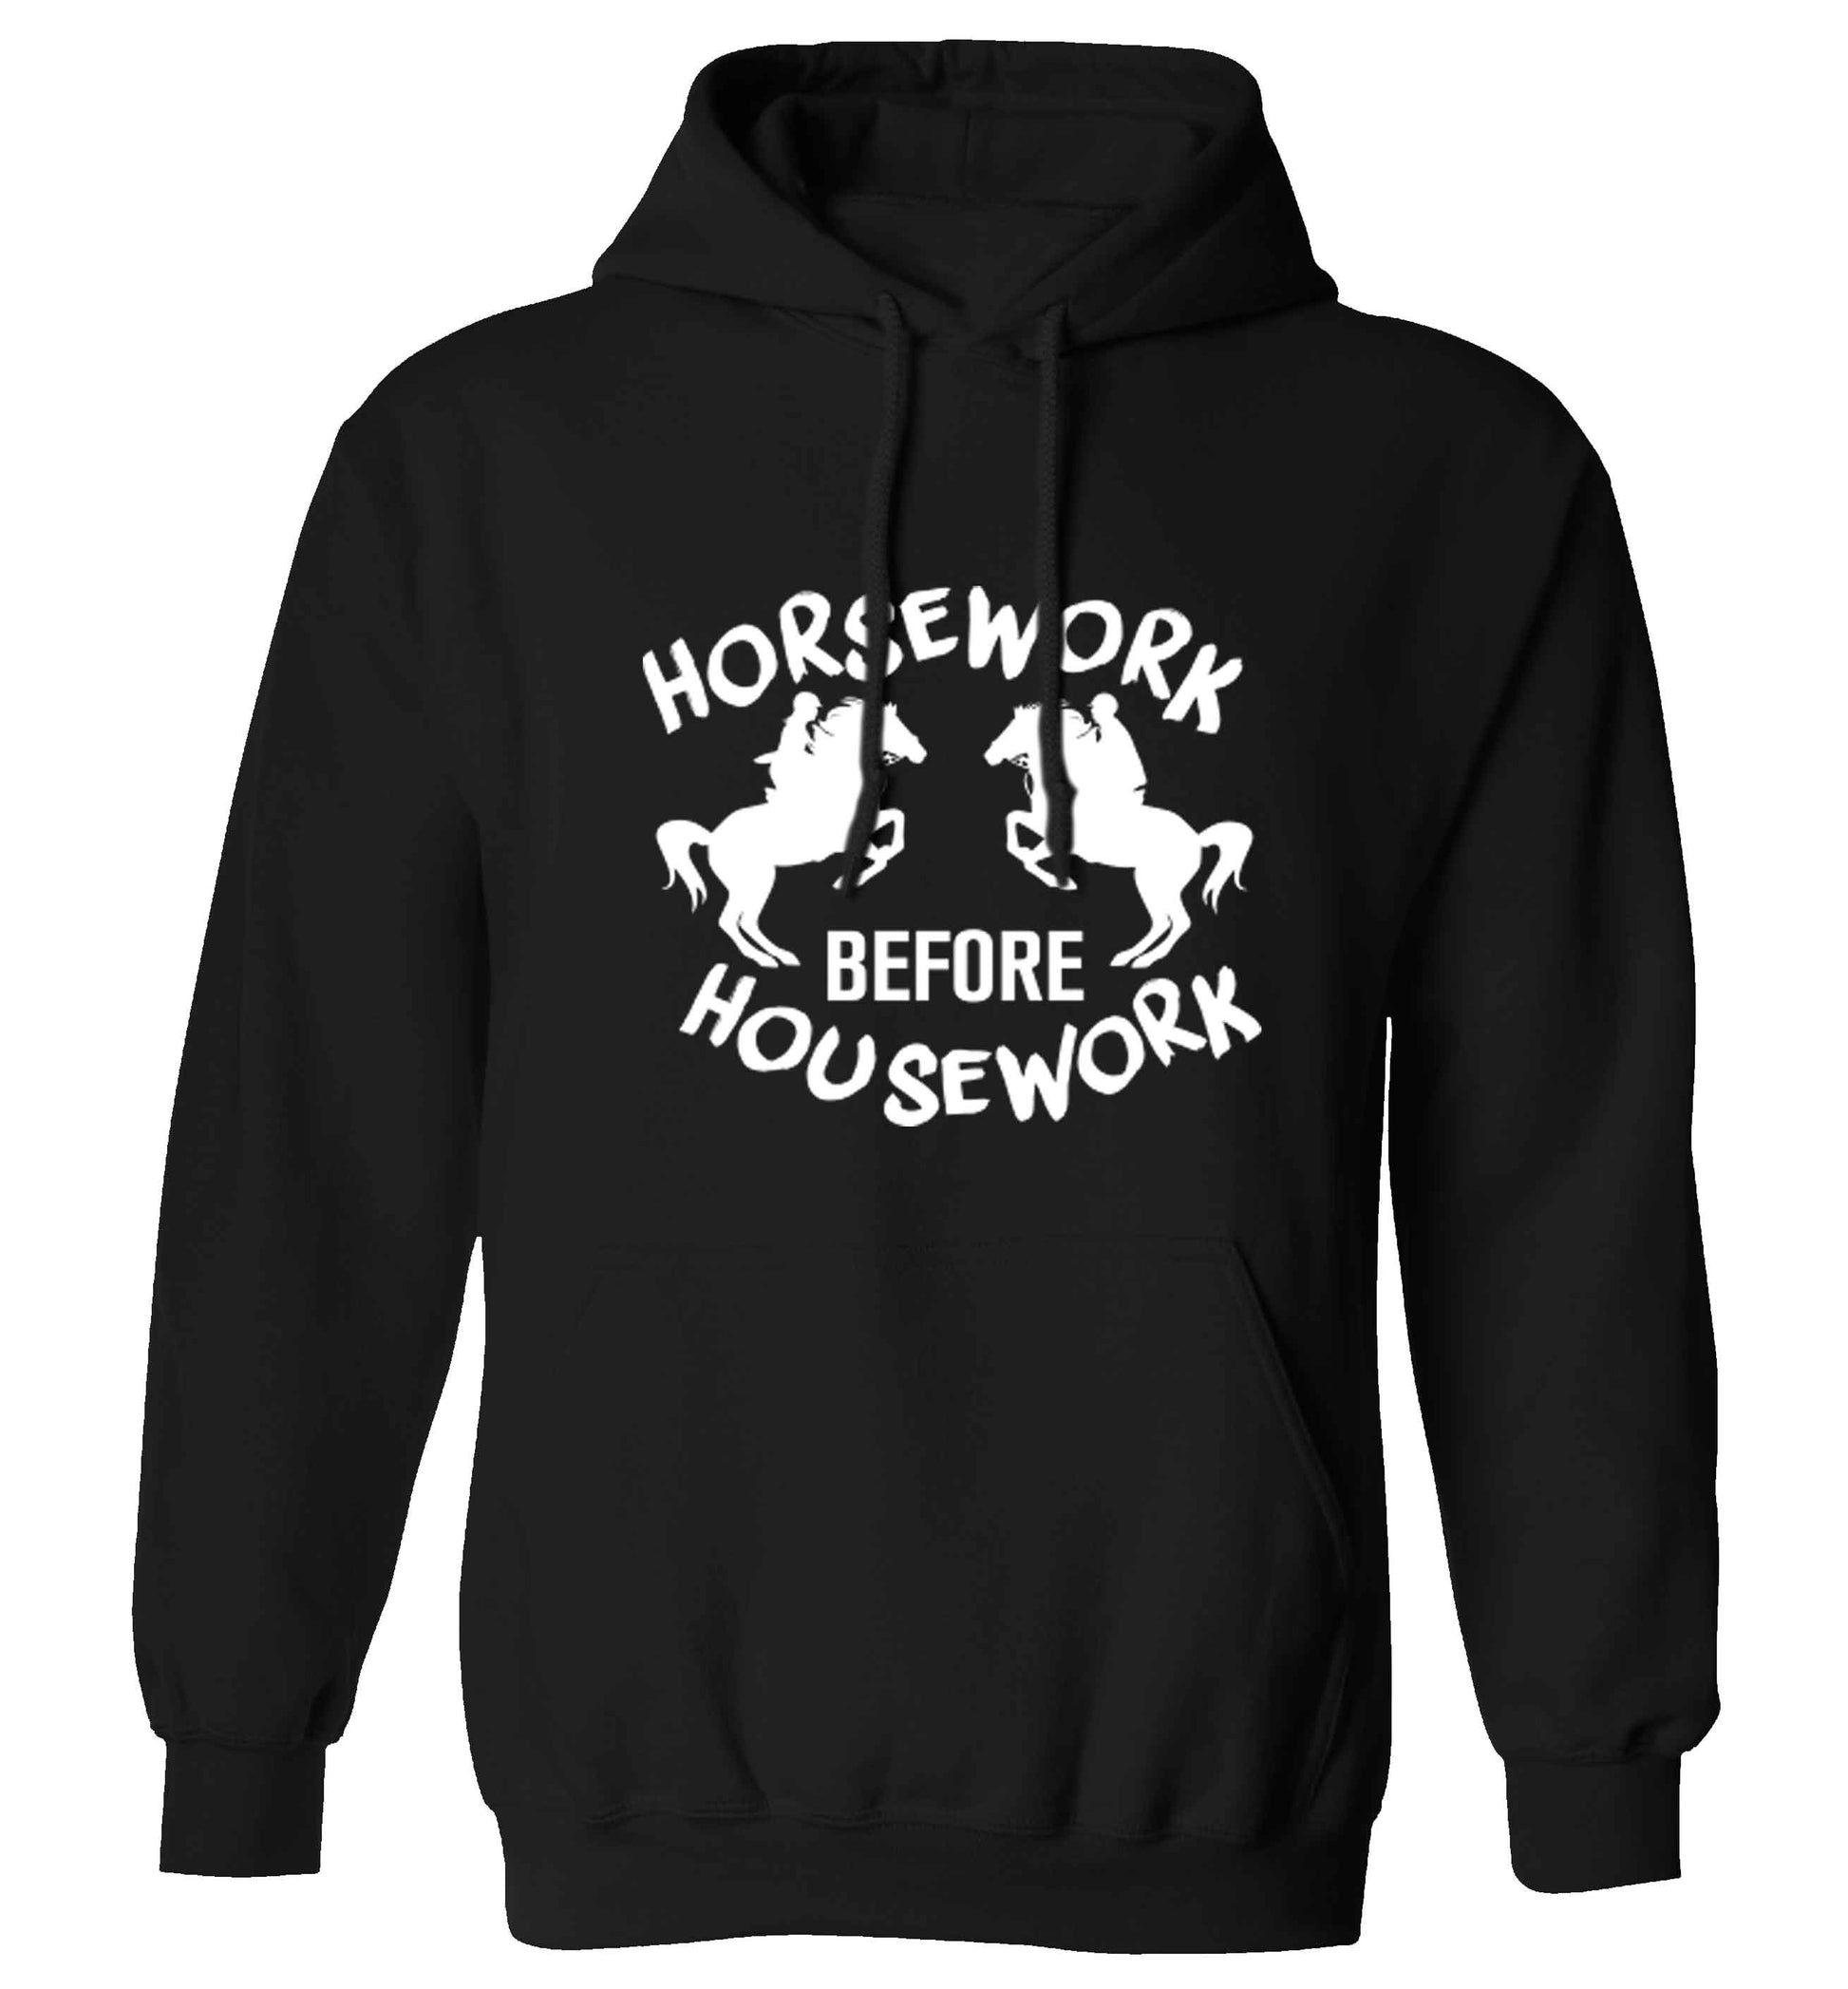 Horsework before housework adults unisex black hoodie 2XL